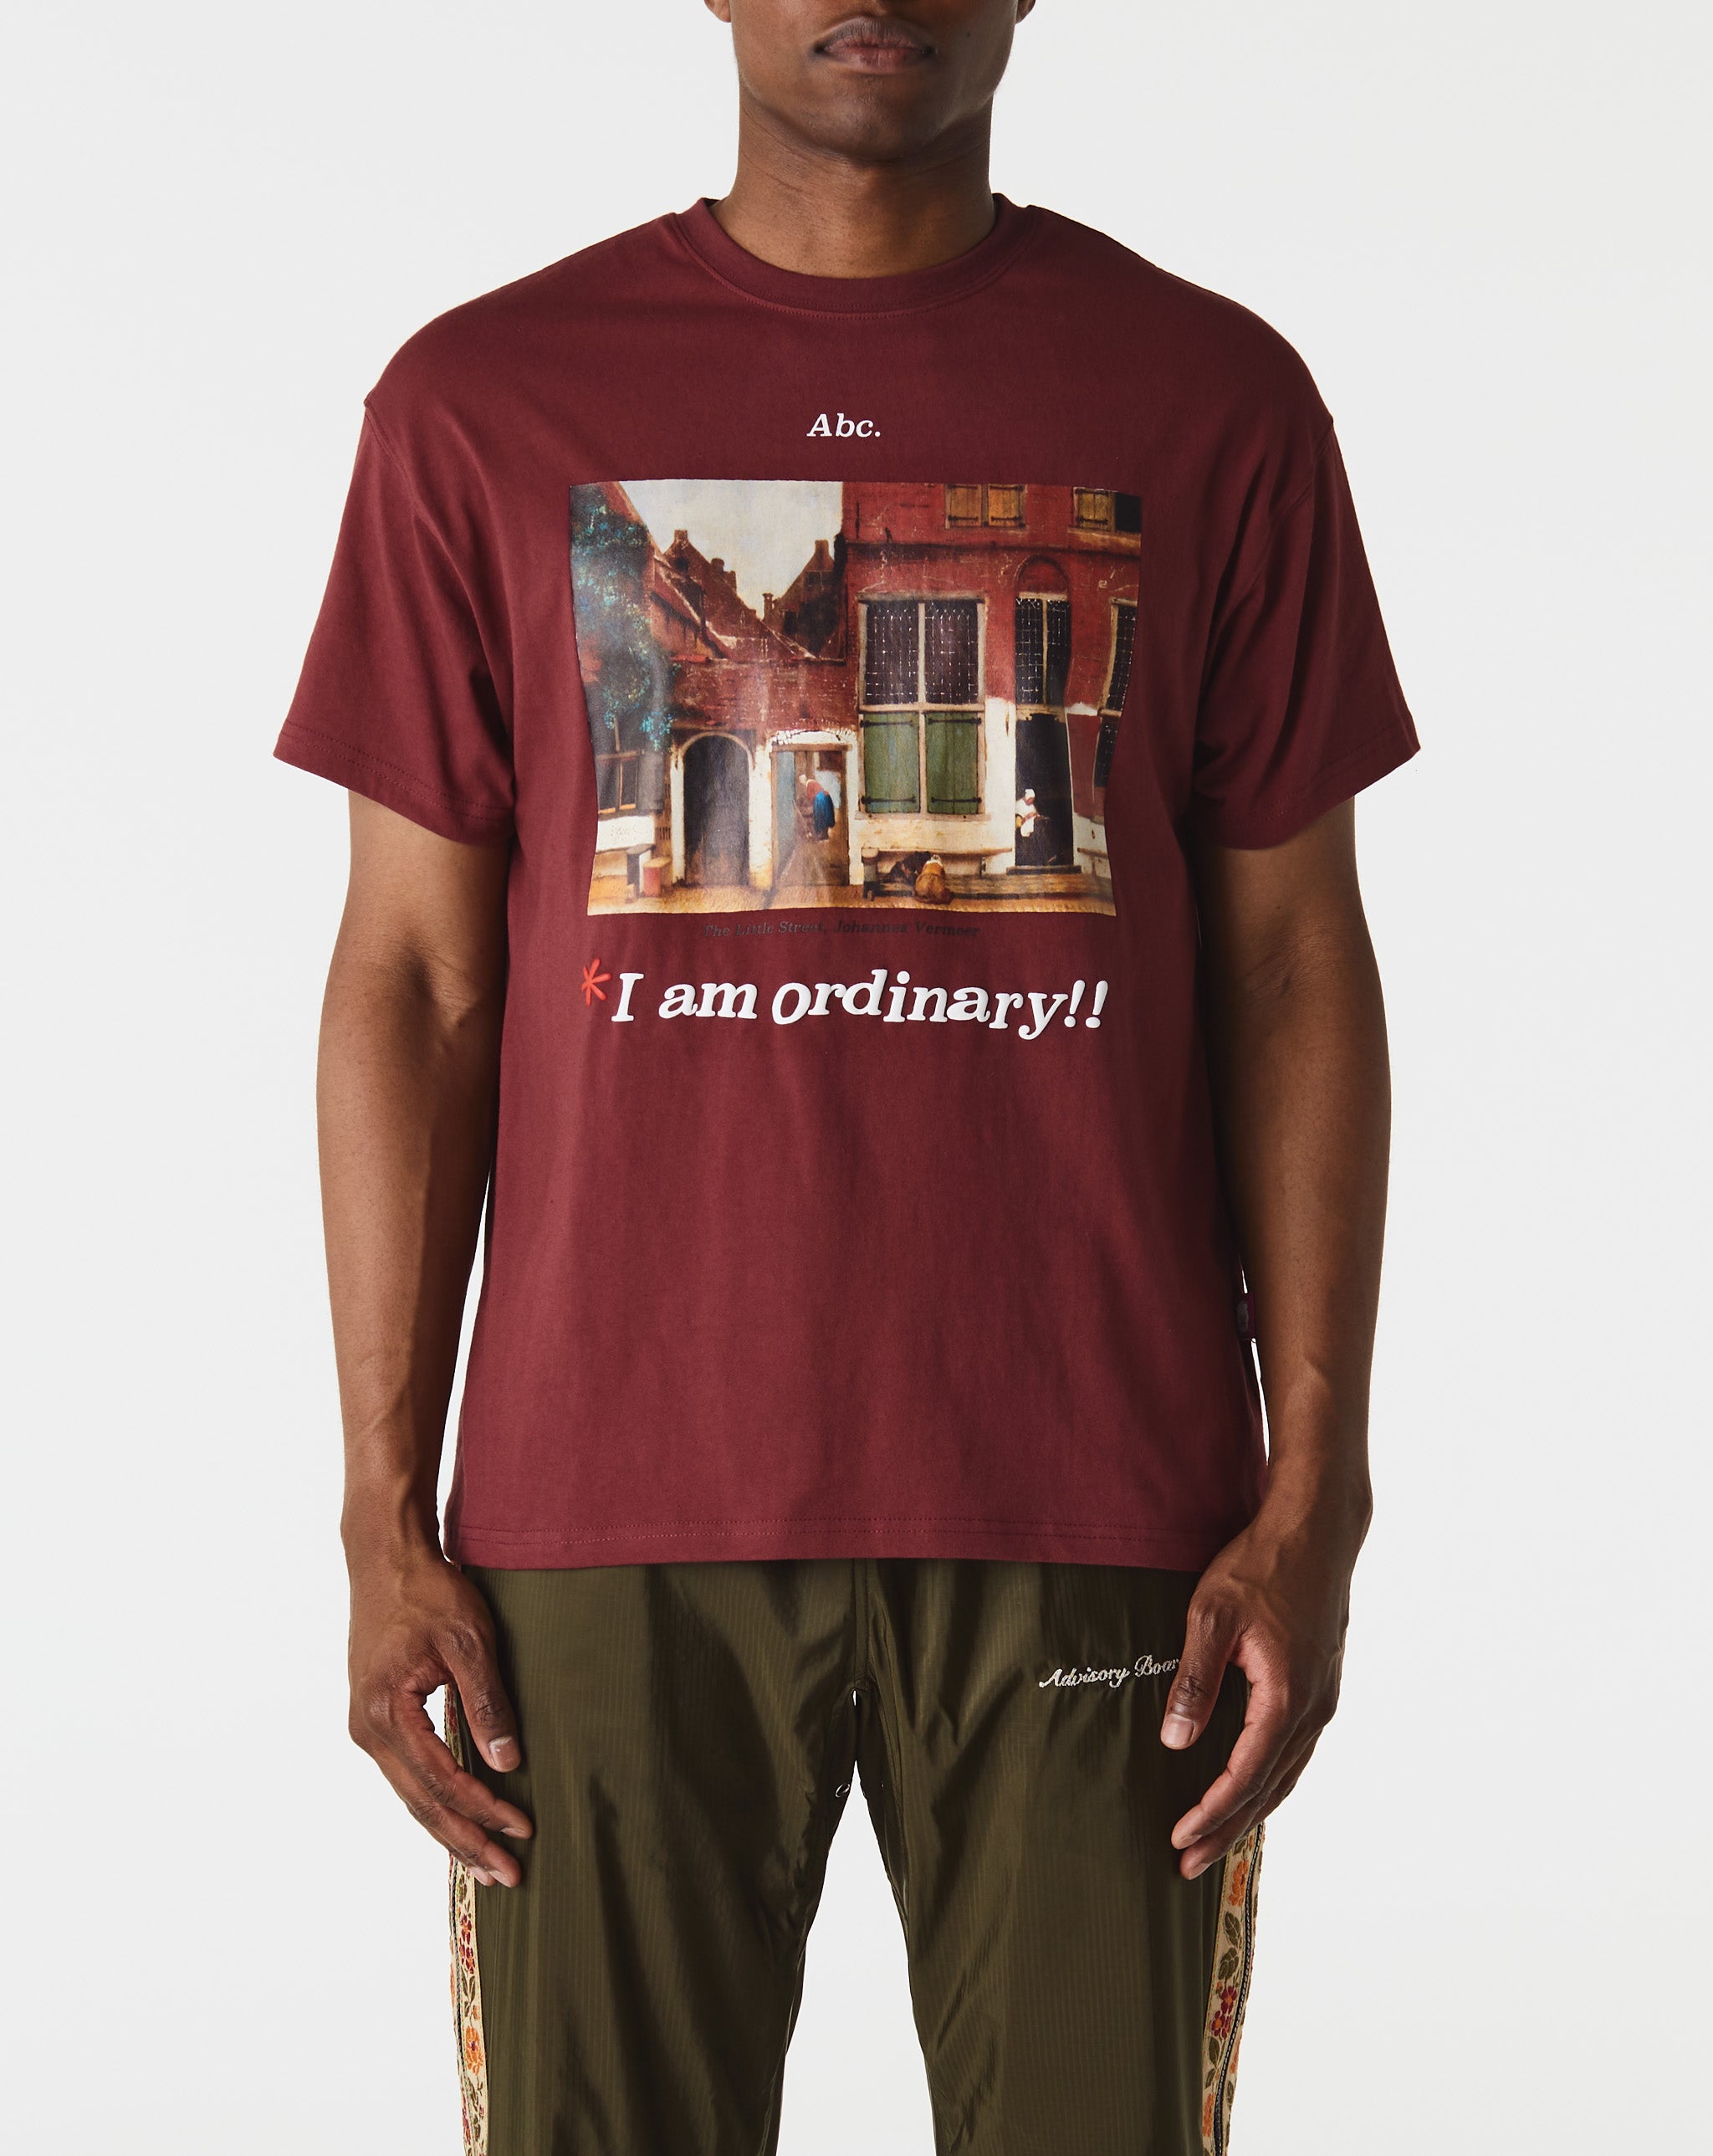 Herd Mentality T-Shirt I Am Ordinary T-Shirt  - Cheap Erlebniswelt-fliegenfischen Jordan outlet